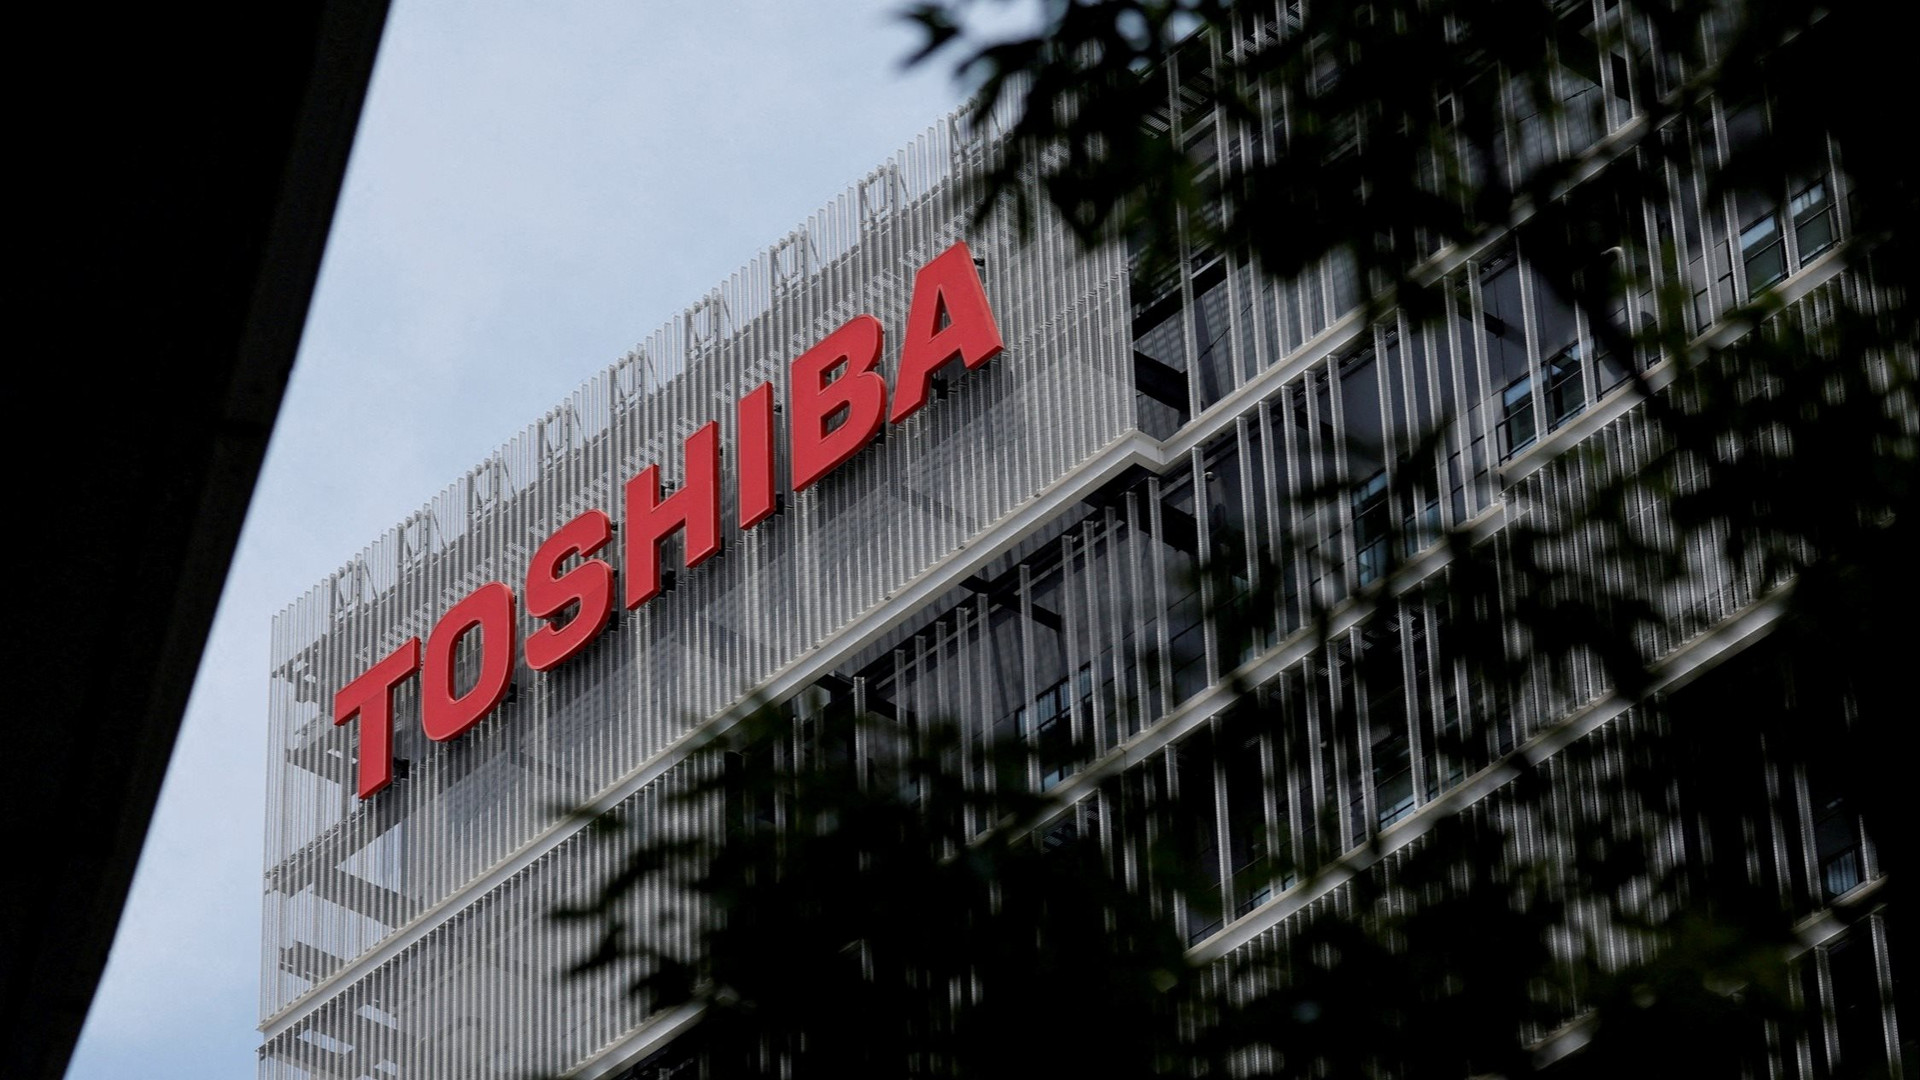 Toshiba - Hãng điện tử 148 năm của Nhật Bản chốt bán mình với giá 15,3 tỷ USD? - Ảnh 1.